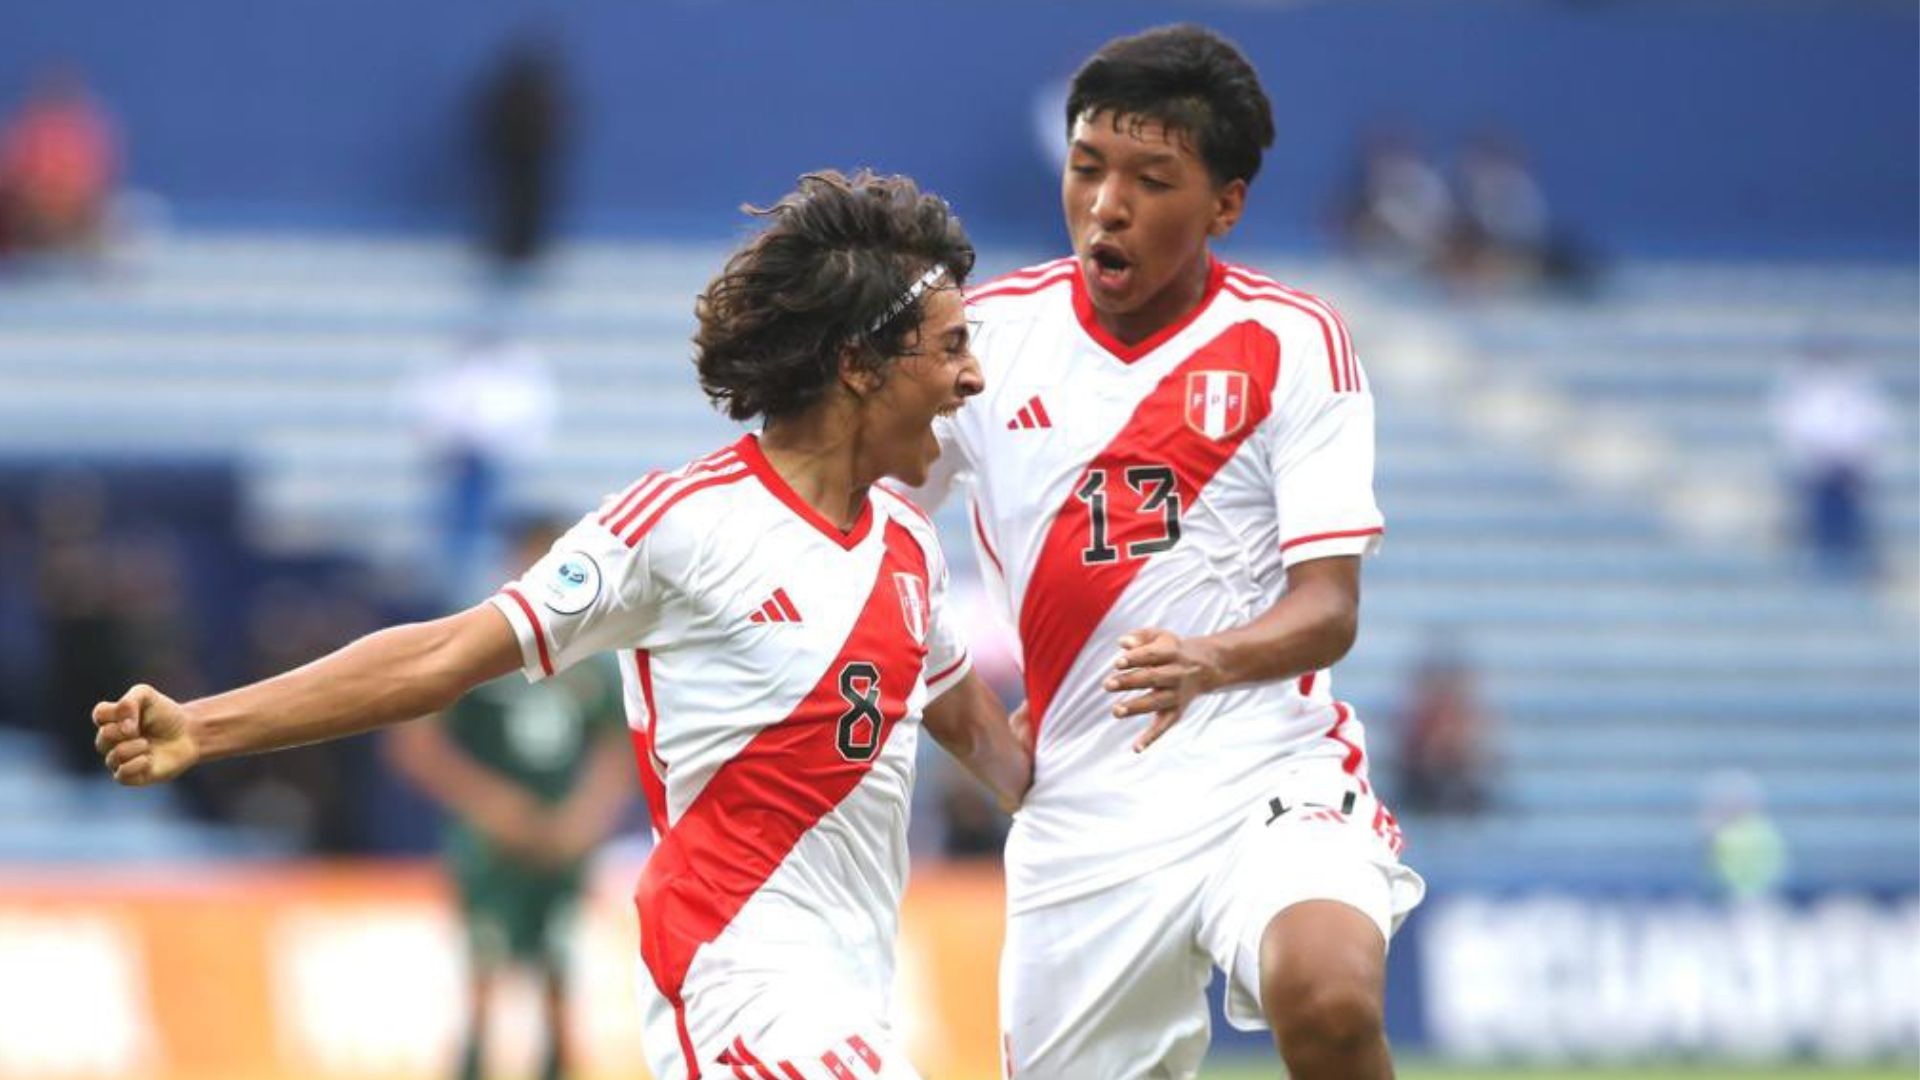 Bassco Soyer marcó el primer gol peruano en el certamen. (FPF)